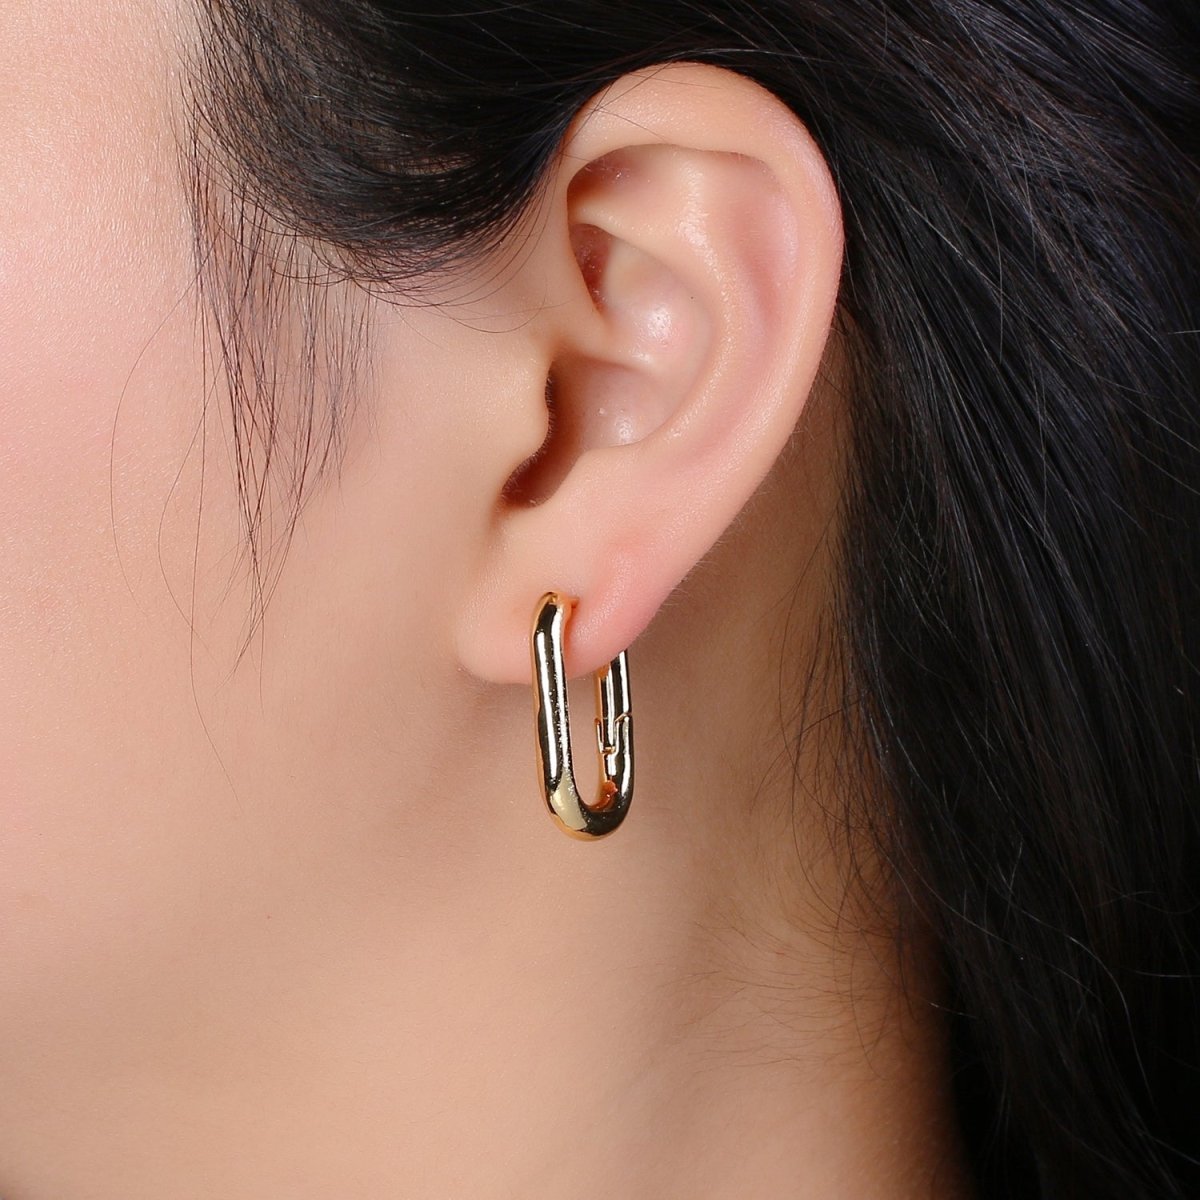 Square Hoop Earrings, U-Shape Gold Hoops, 14k Gold Filled Huggie Earrings, Geometric Huggies, Oval Hoop earrings, Mini hoops Q-087 P-037 - DLUXCA